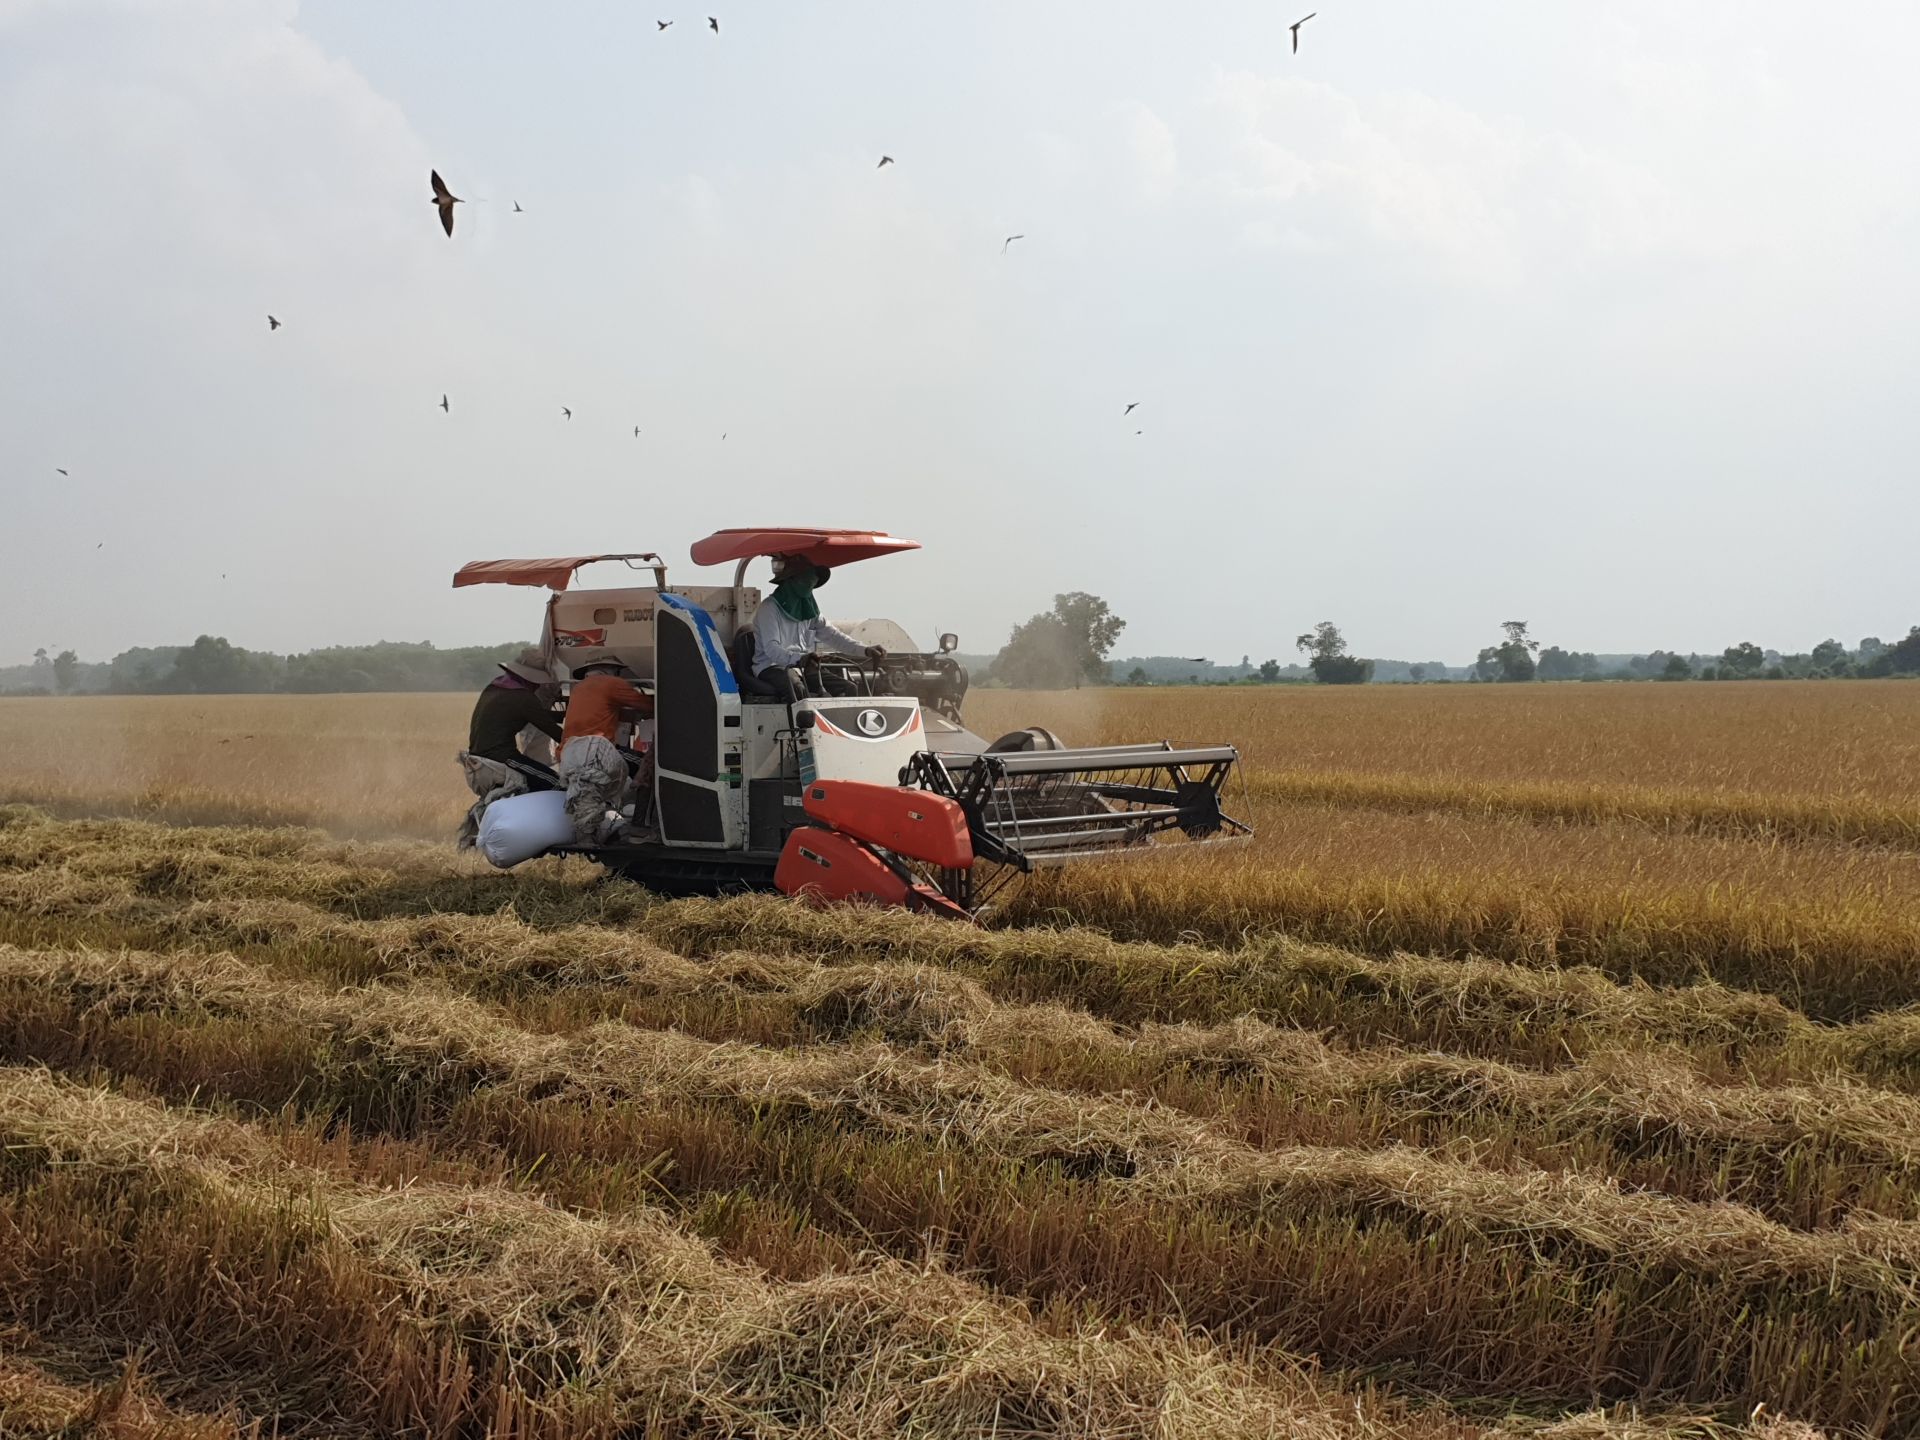 Tây Ninh: Giá lúa tăng cao, nông dân bán 1 công lãi 4,5 triệu - Ảnh 1.